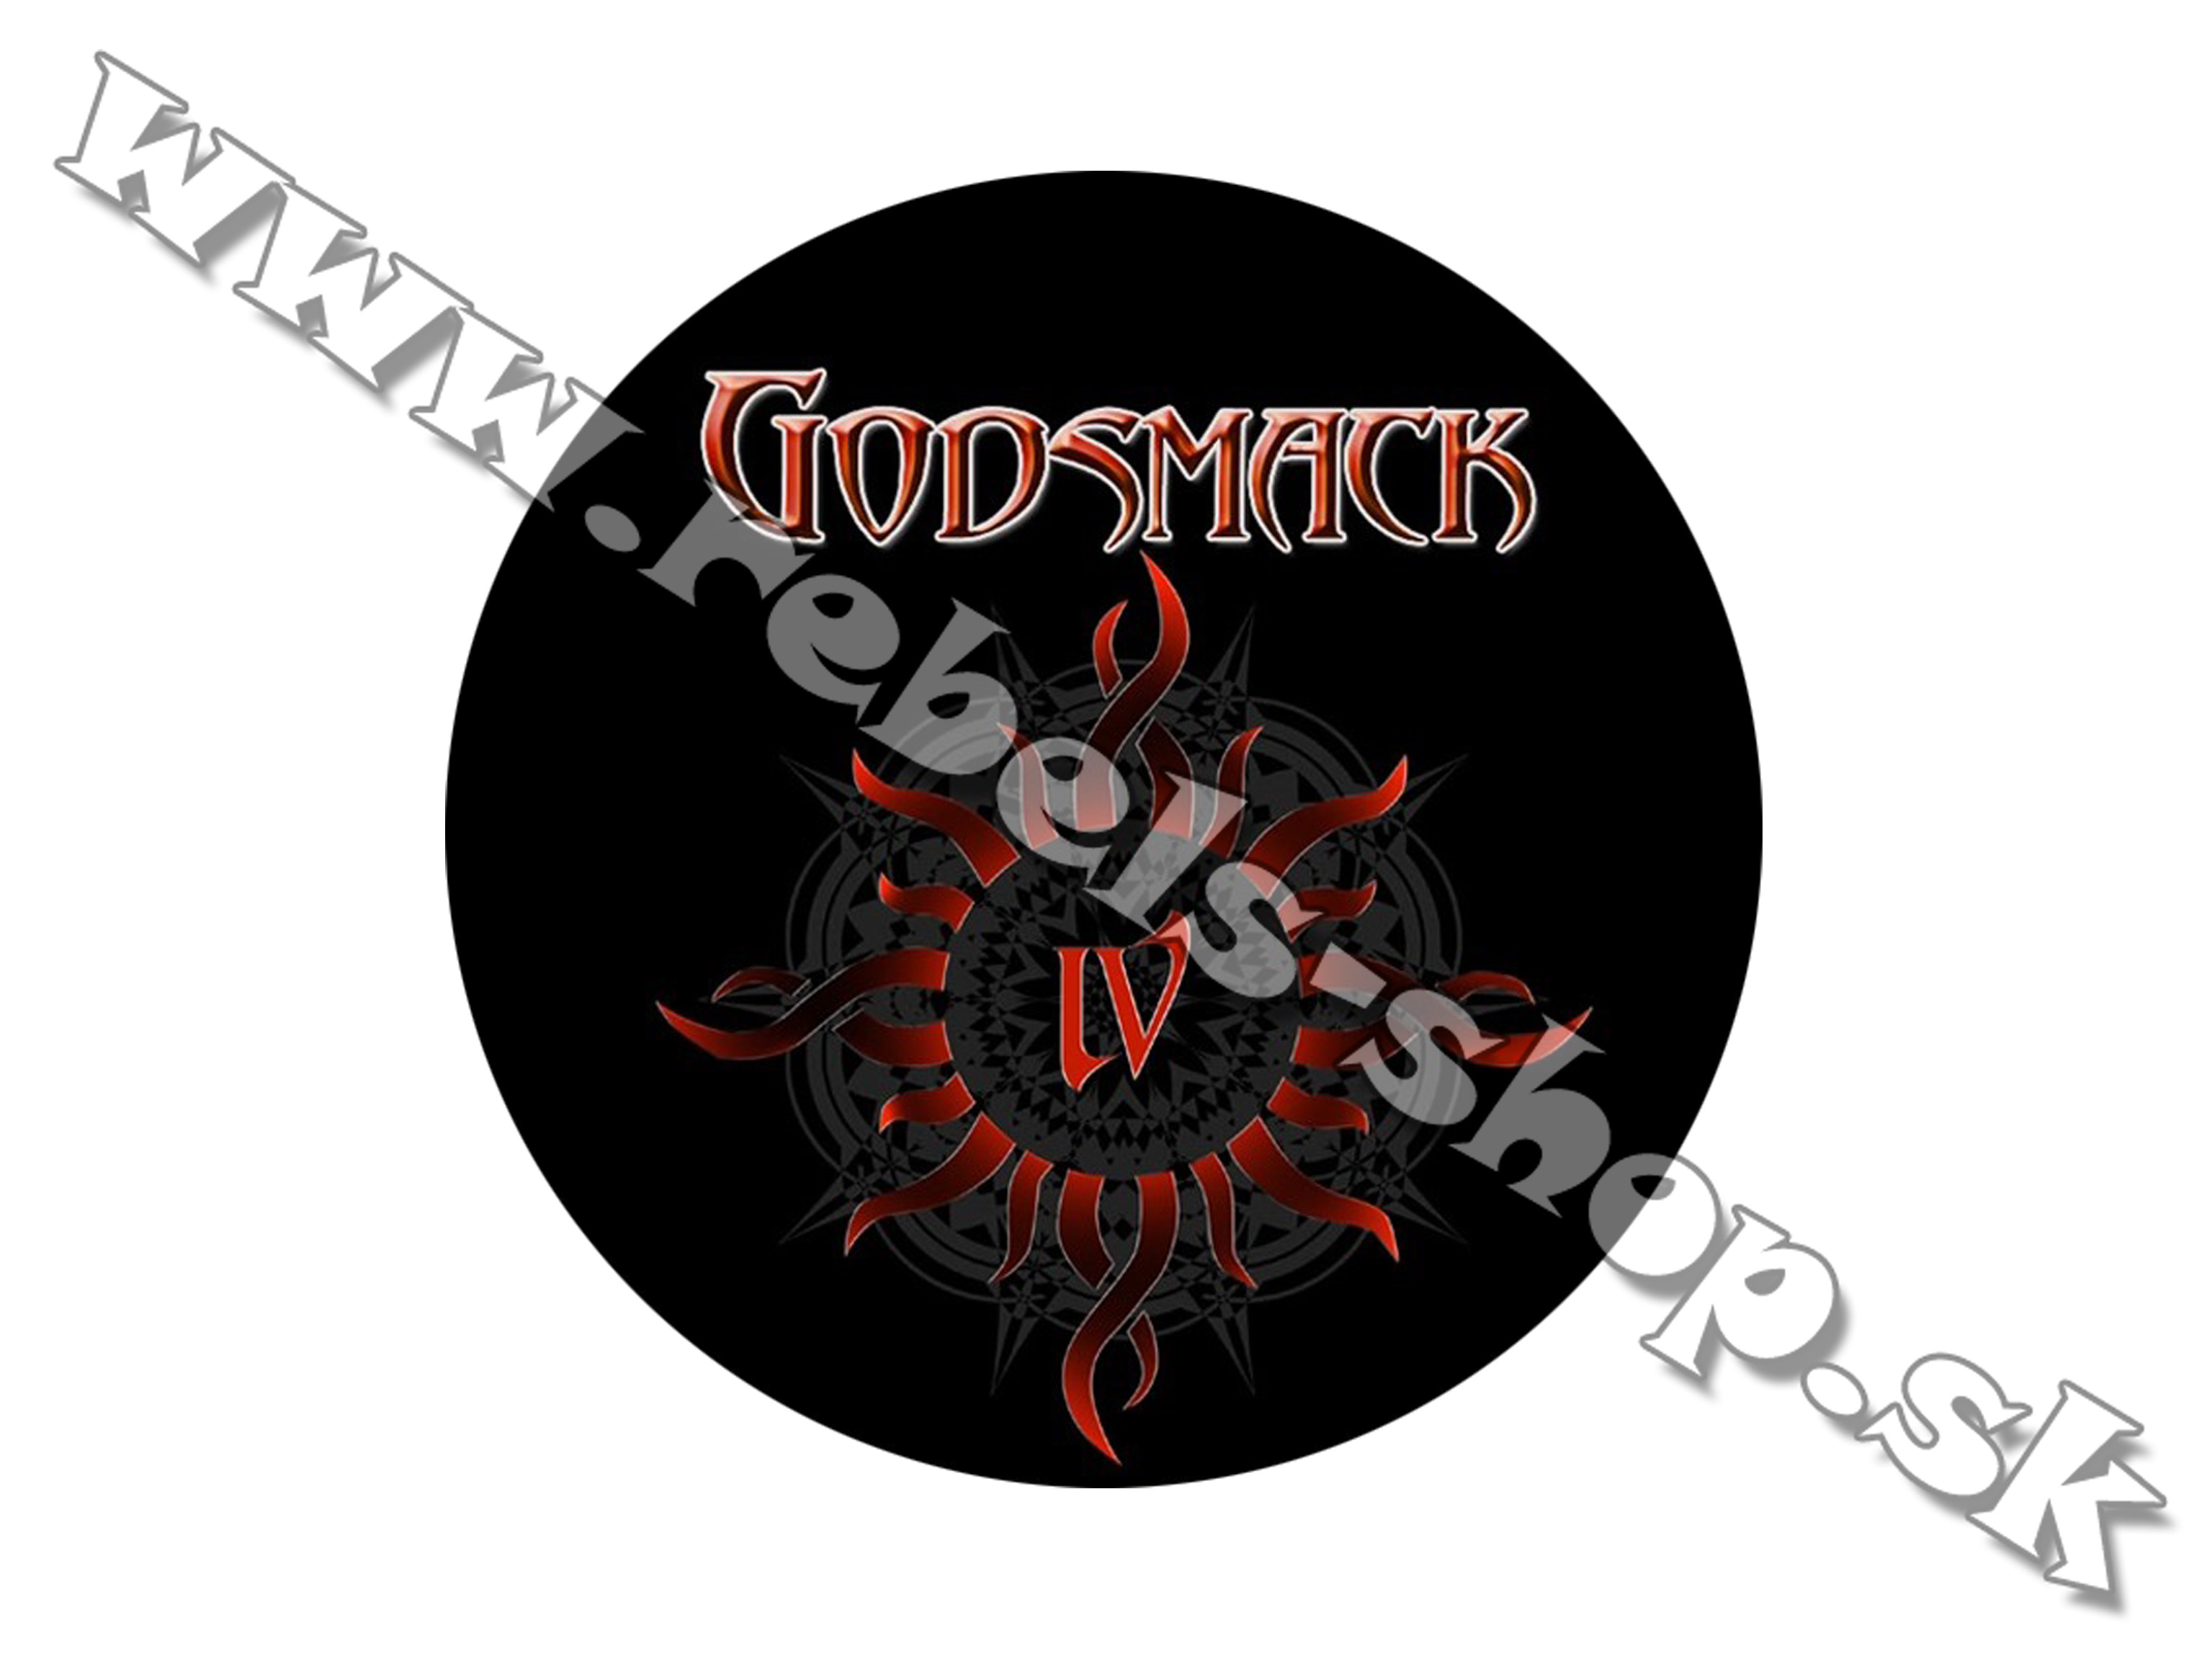 Odznak "Godsmack"